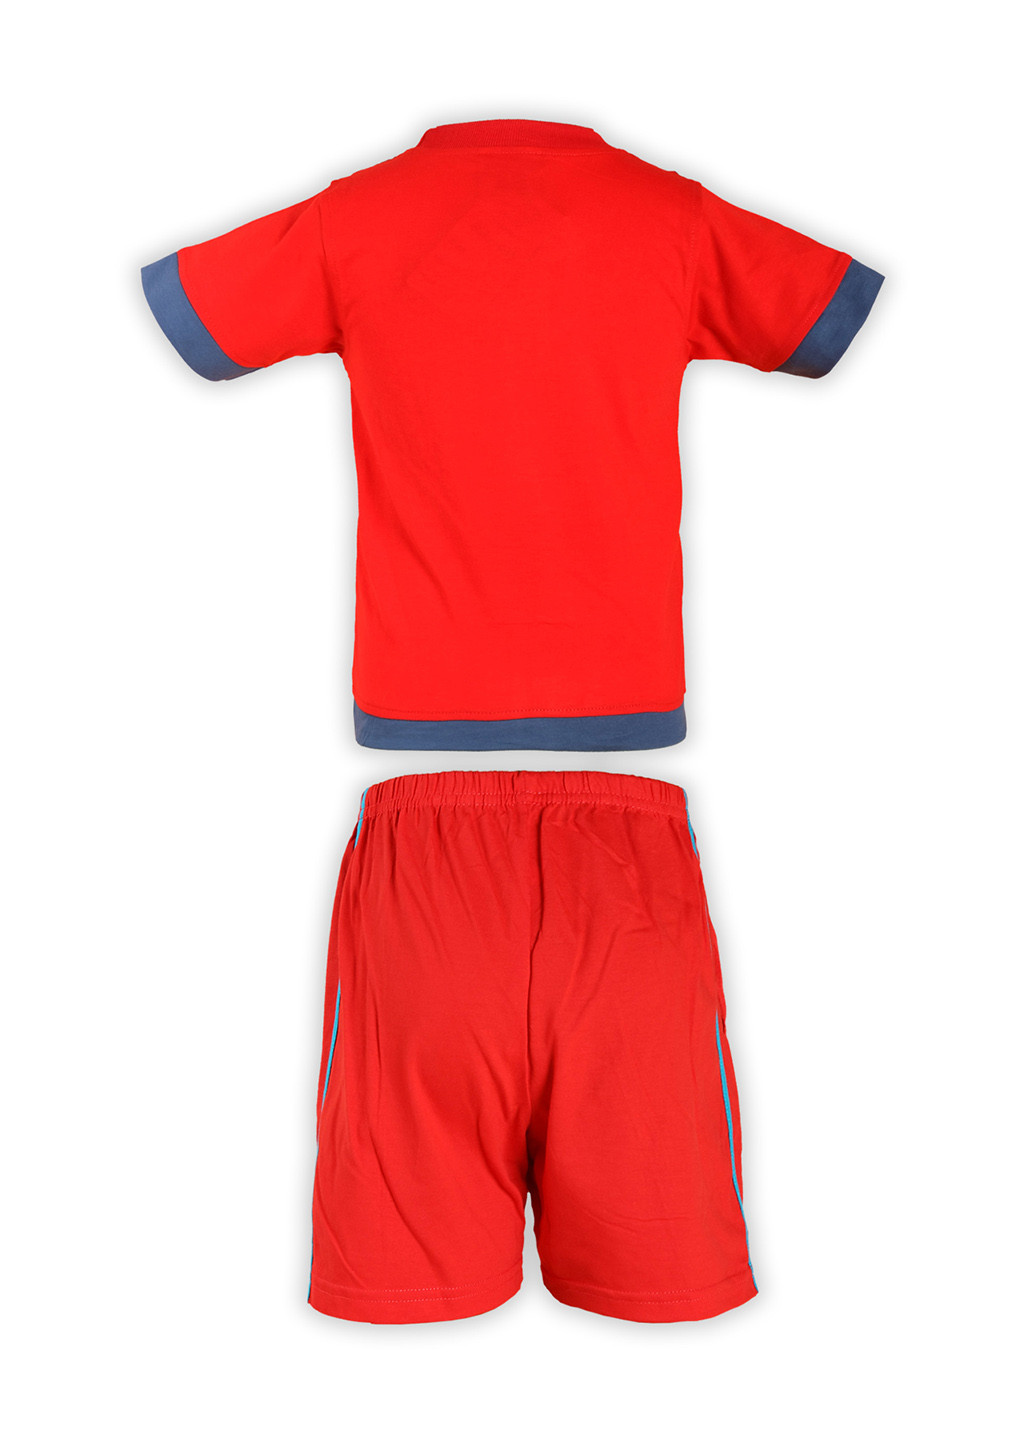 Червоний літній костюм (футболка, шорти) брючний Fashion Children